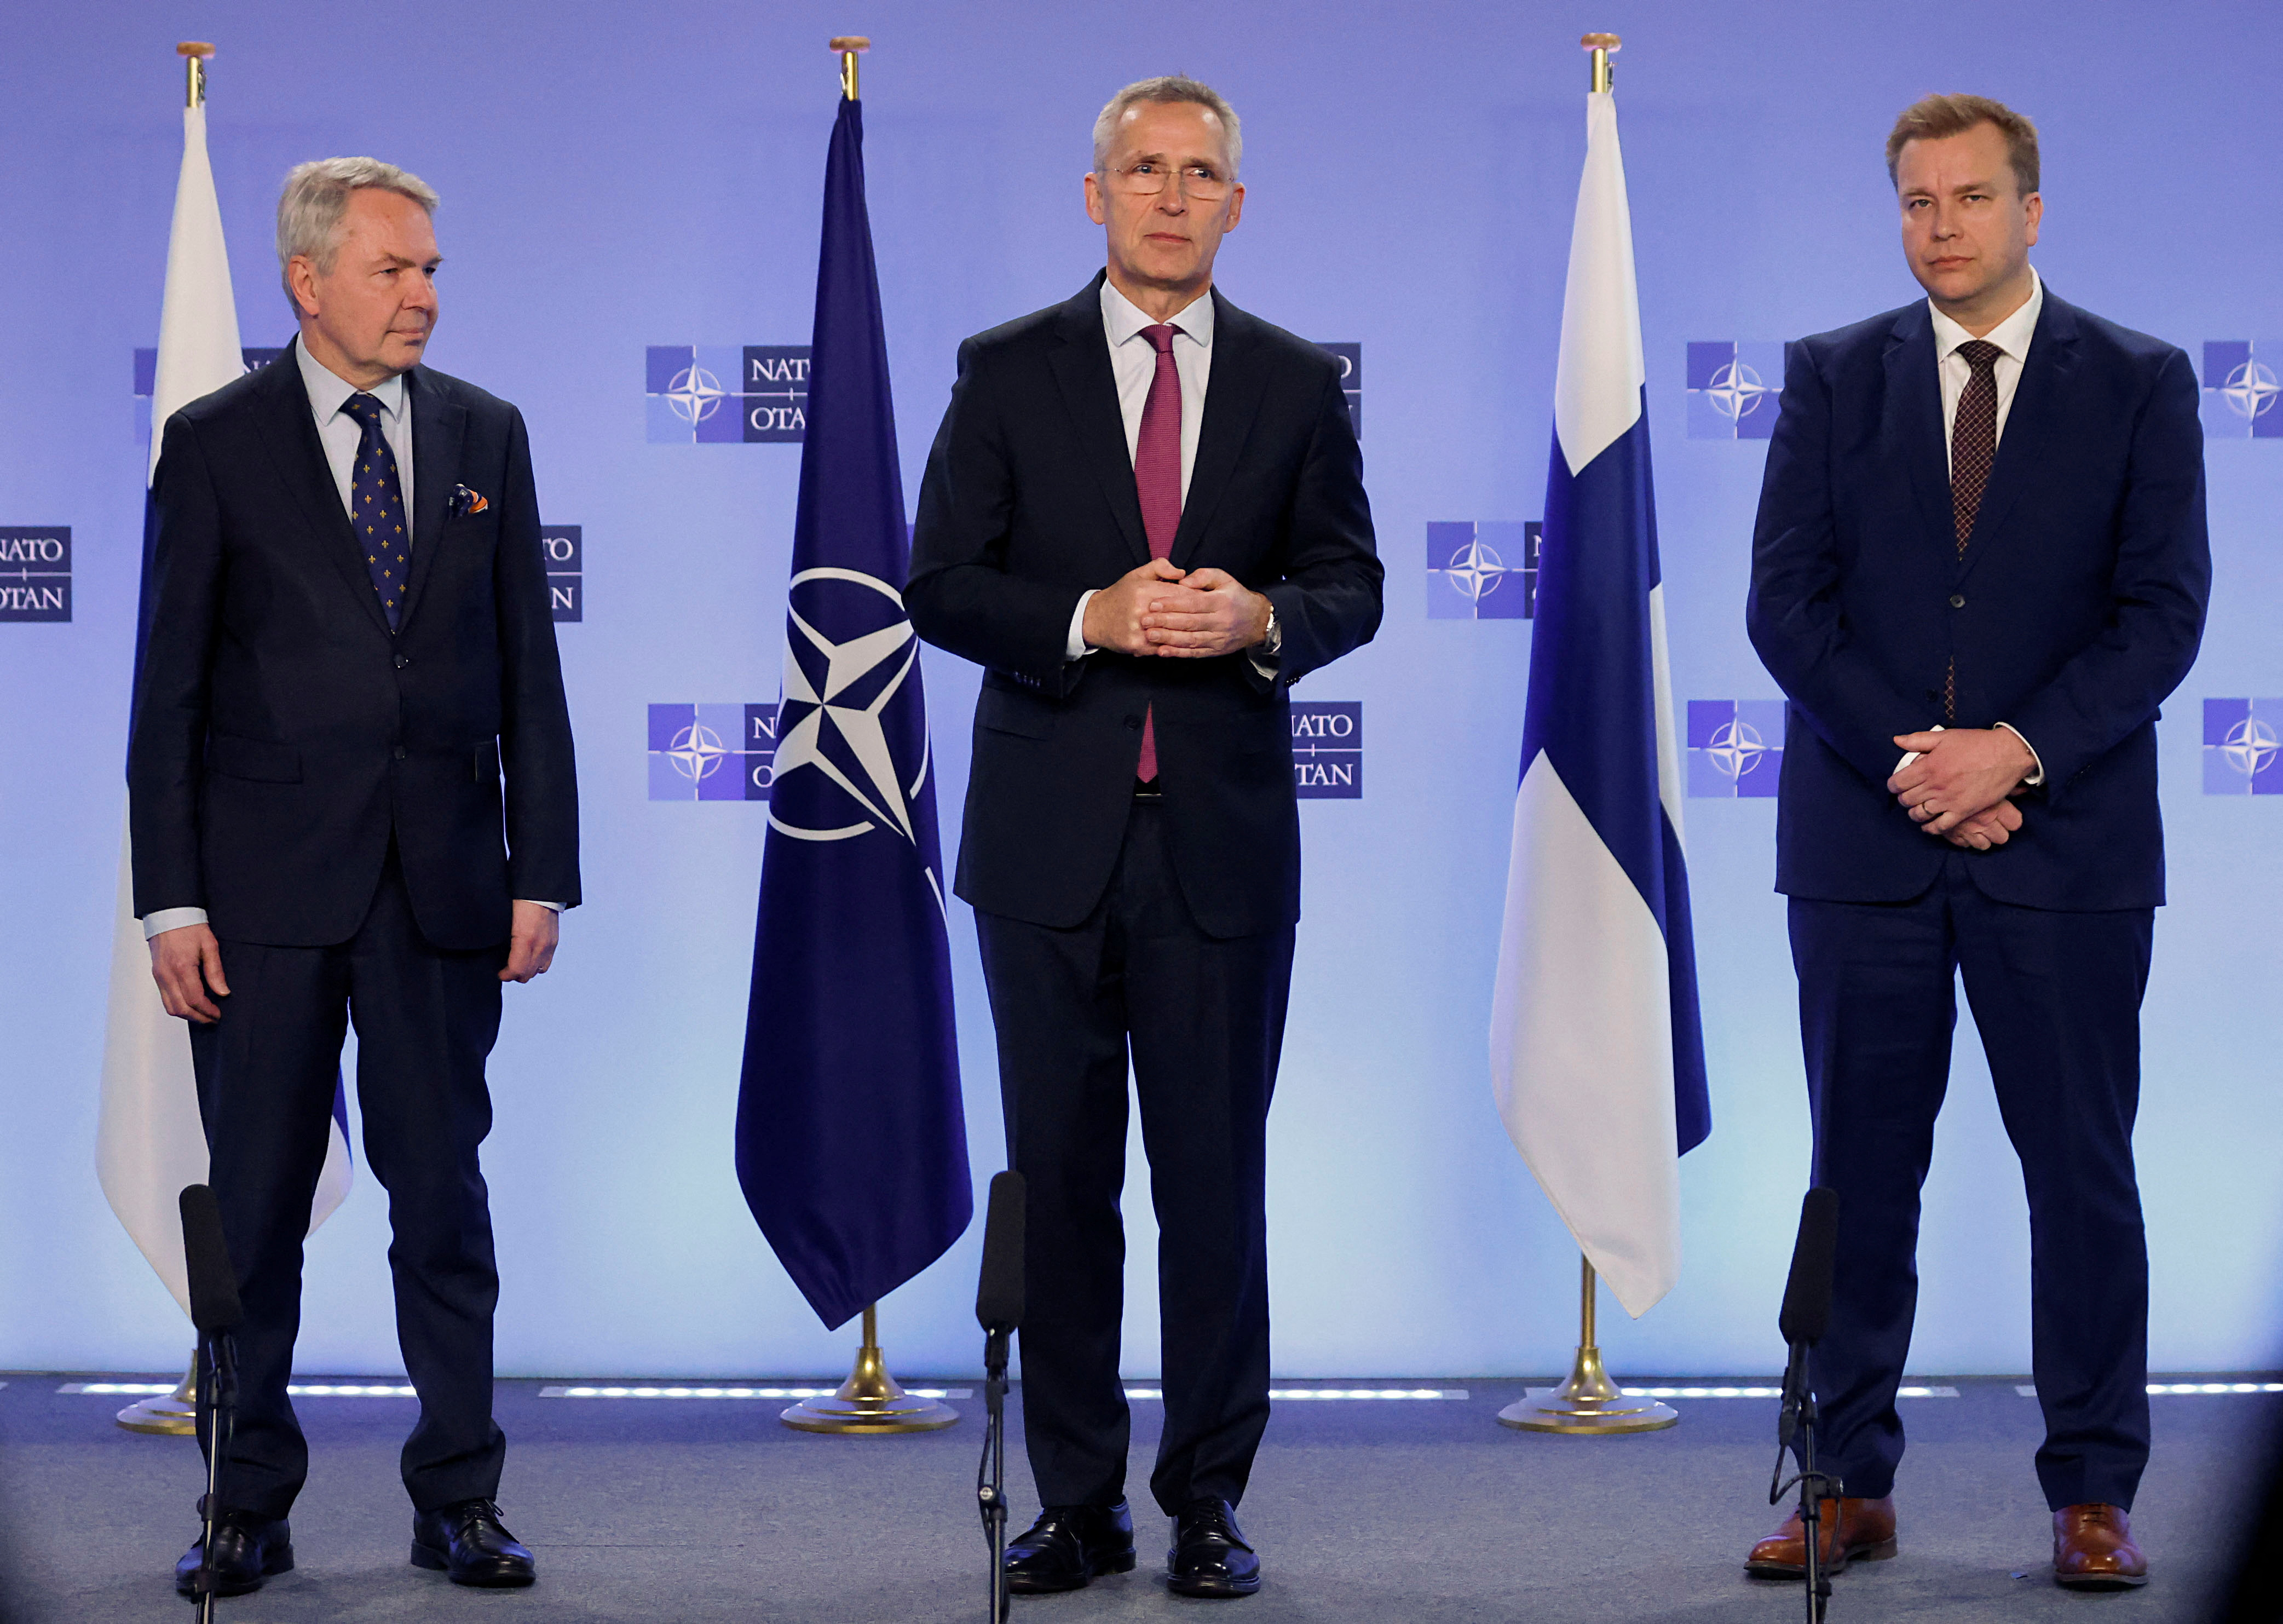 El Secretario General de la OTAN, Jens Stoltenberg, se reúne con el Ministro de Asuntos Exteriores de Finlandia, Pekka Haavisto, y el Ministro de Defensa, Antti Kaikkonen, en la sede de la OTAN, Bruselas, Bélgica, 20 de marzo de 2023. REUTERS/Johanna Geron